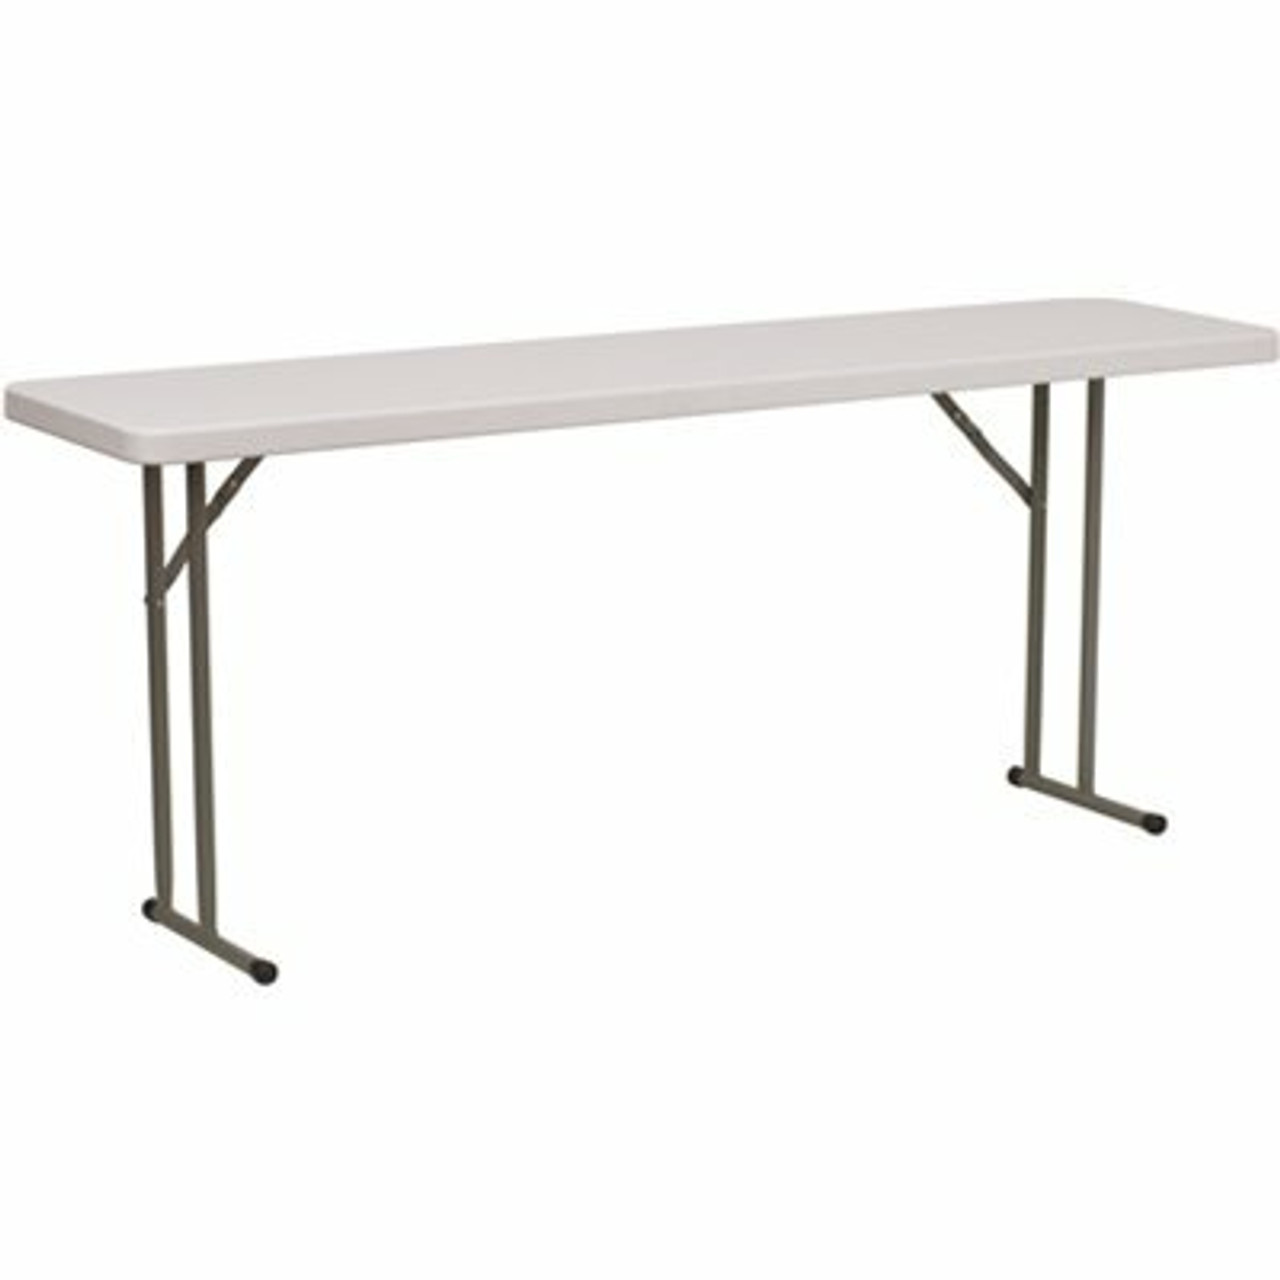 72 In. Granite White Plastic Tabletop Metal Frame Folding Table - 308685777